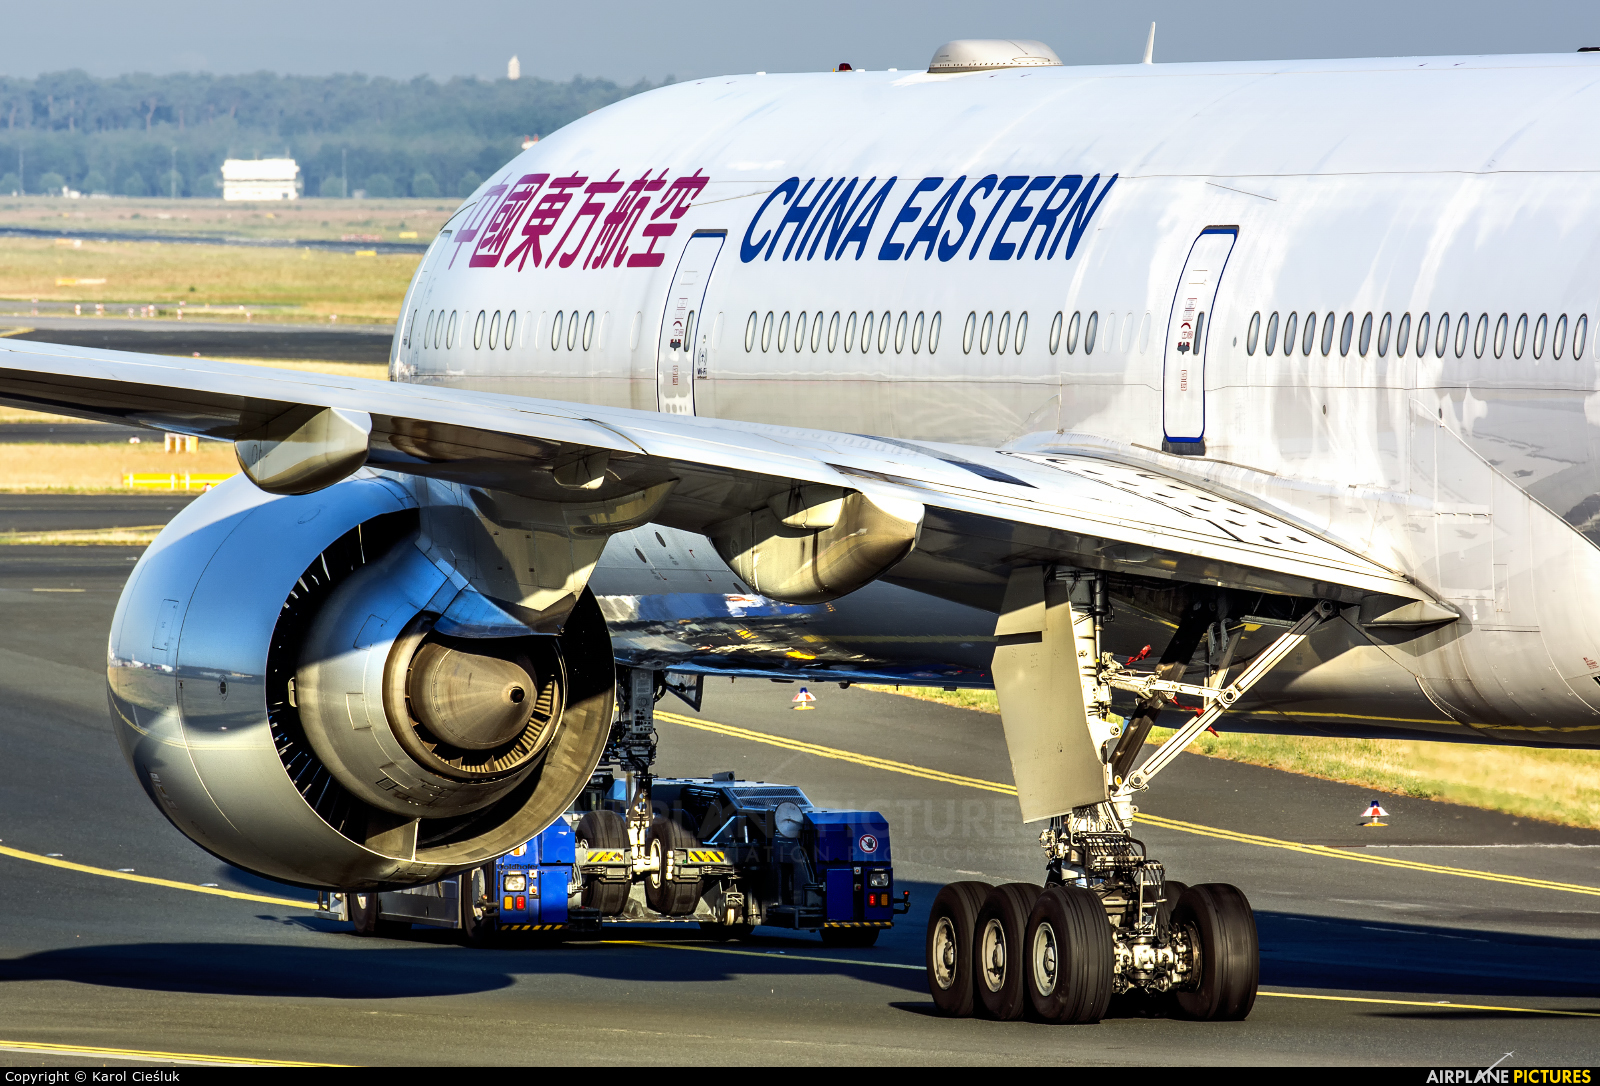 China Eastern Airlines B-7868 aircraft at Frankfurt